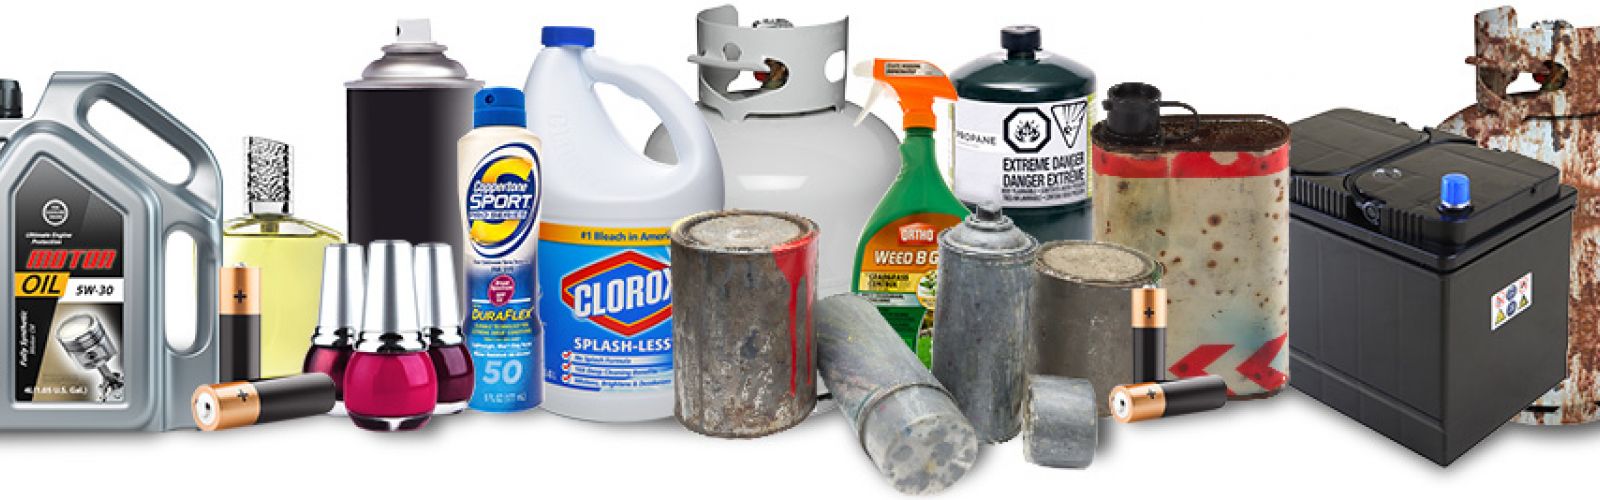 hazardous waste items